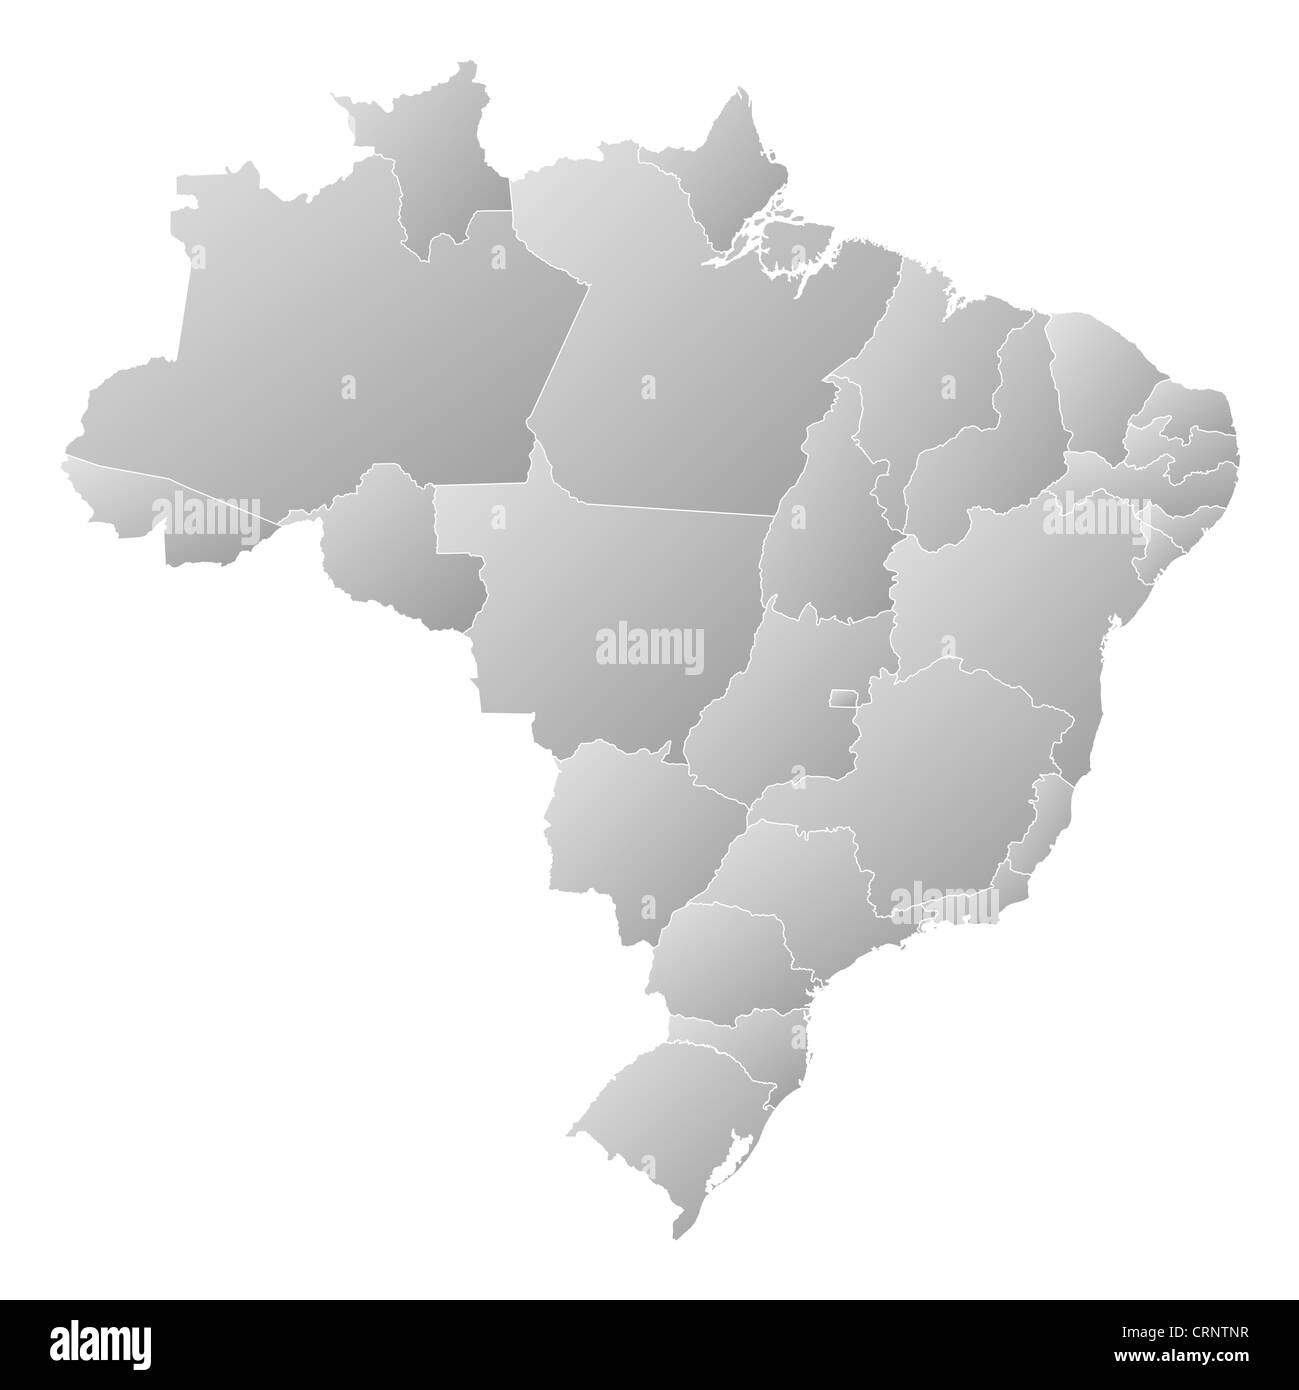 Politische Karte von Brasilien mit den verschiedenen Staaten. Stockfoto